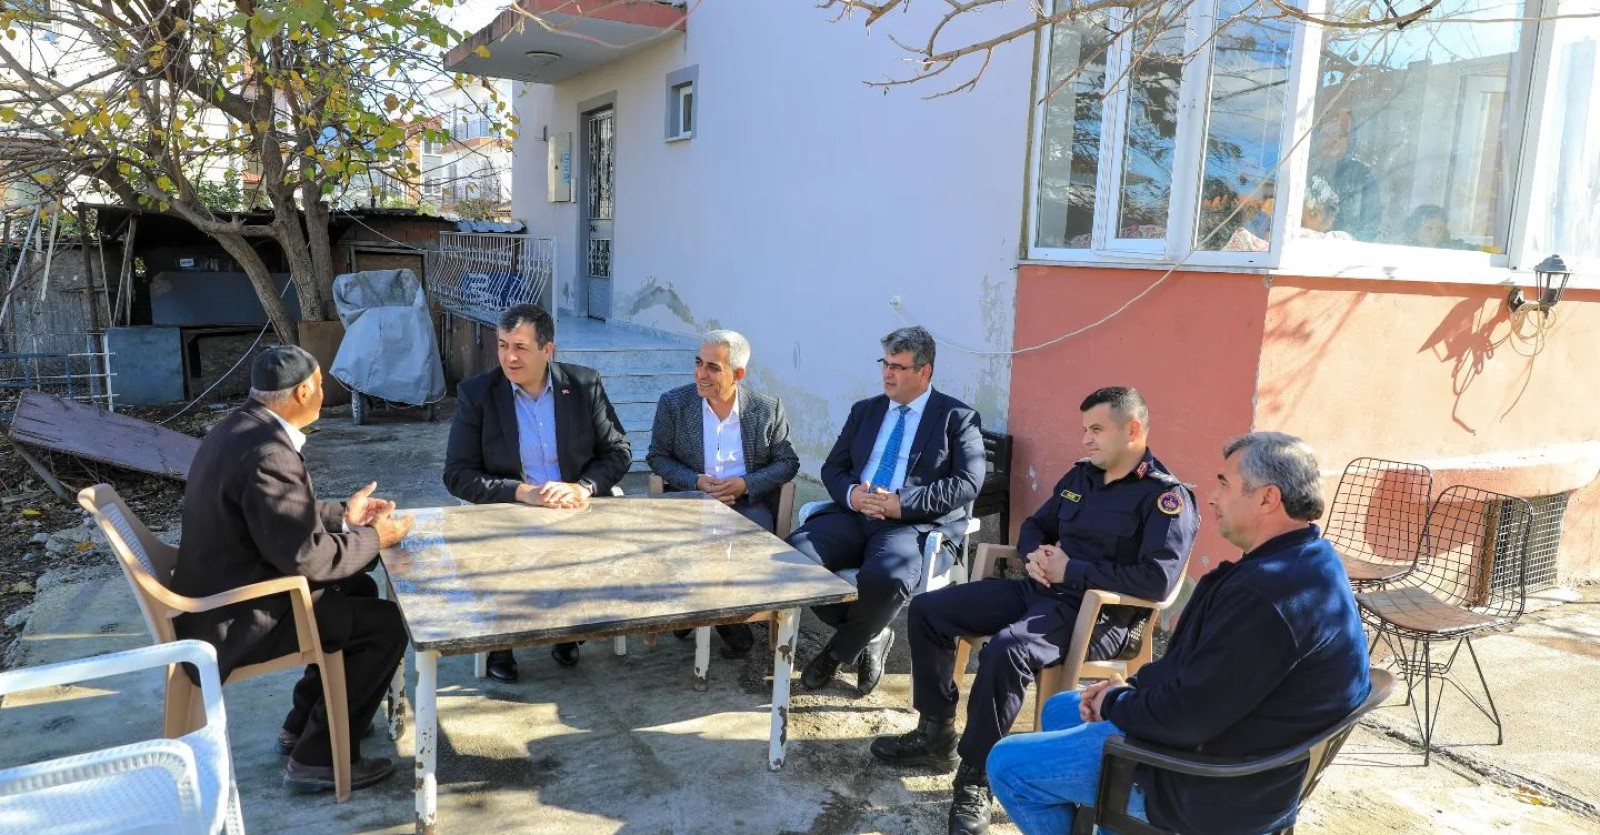 Kaymakamımız Mesut Yakuta ile Belediye Başkanımız Muhammet Karakuş ilçemiz Söğütlüyurt Mahallesi'nde hane ziyaretinde bulundular.